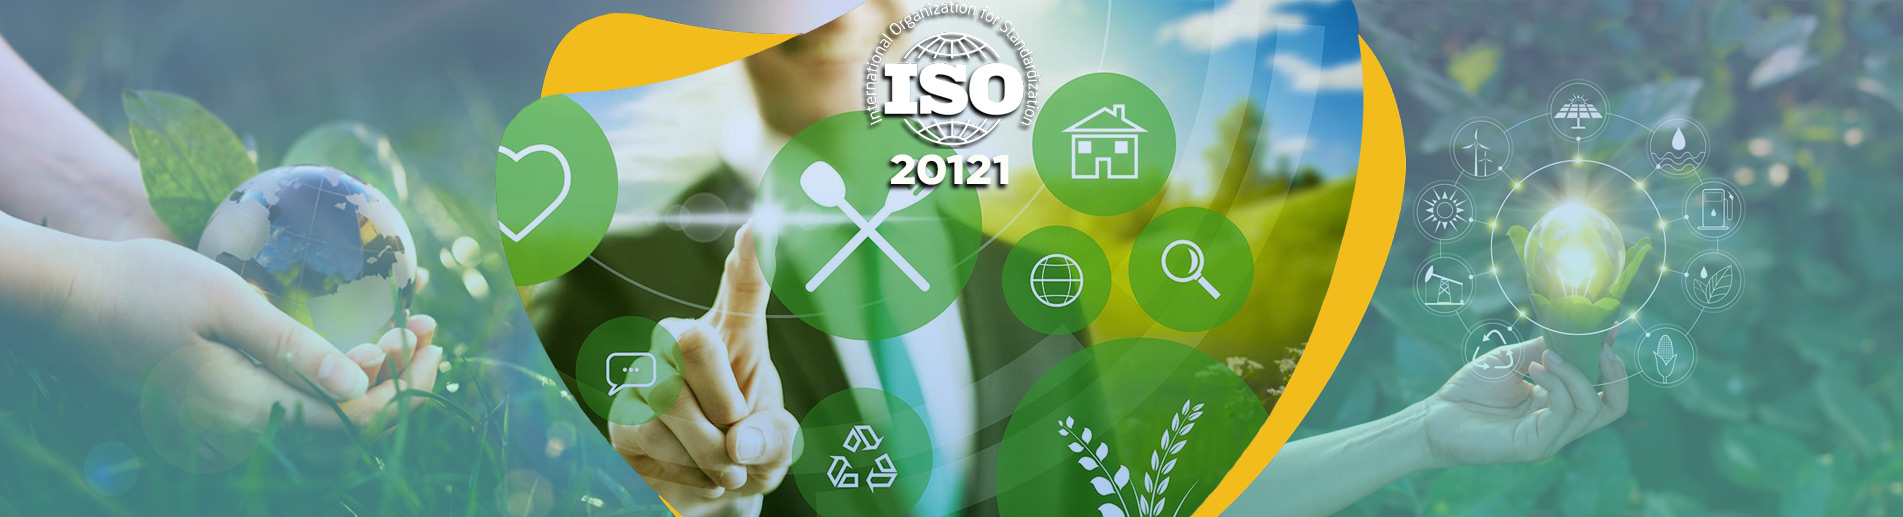 ISO 20121 Etkin Sürdürülebilir Etkinlikler Standardı